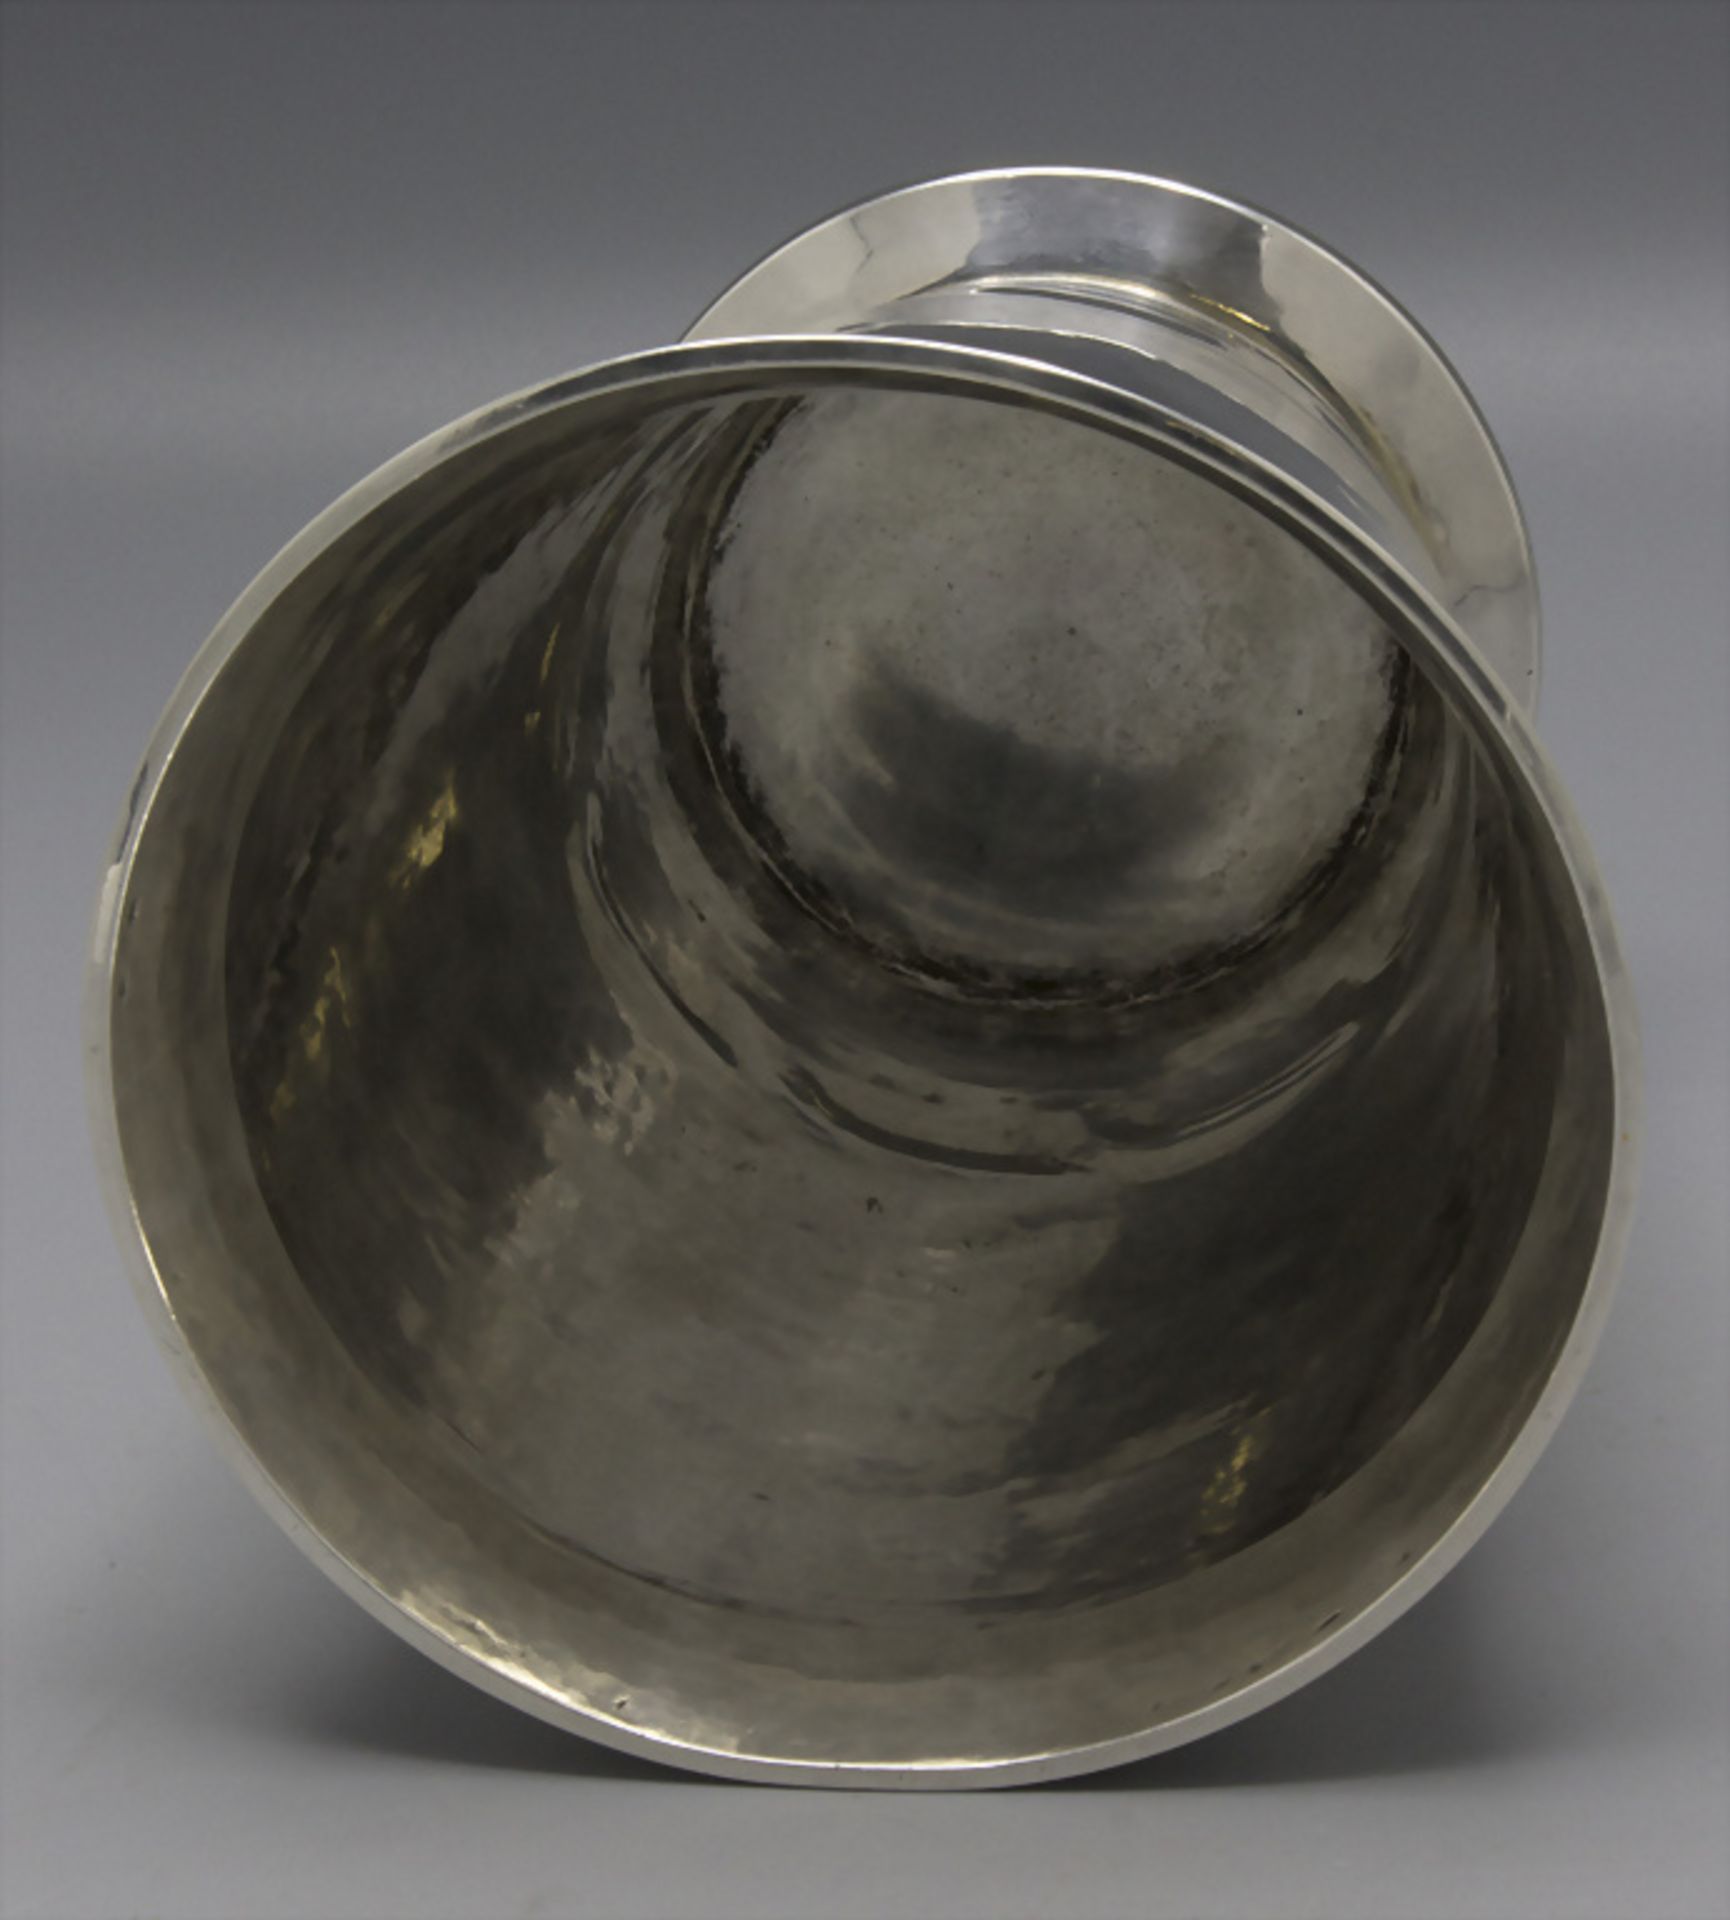 Art Déco Silbervase / Vase en argent massif martelé / A silver vase, Georges René Lecomte, ... - Bild 3 aus 6